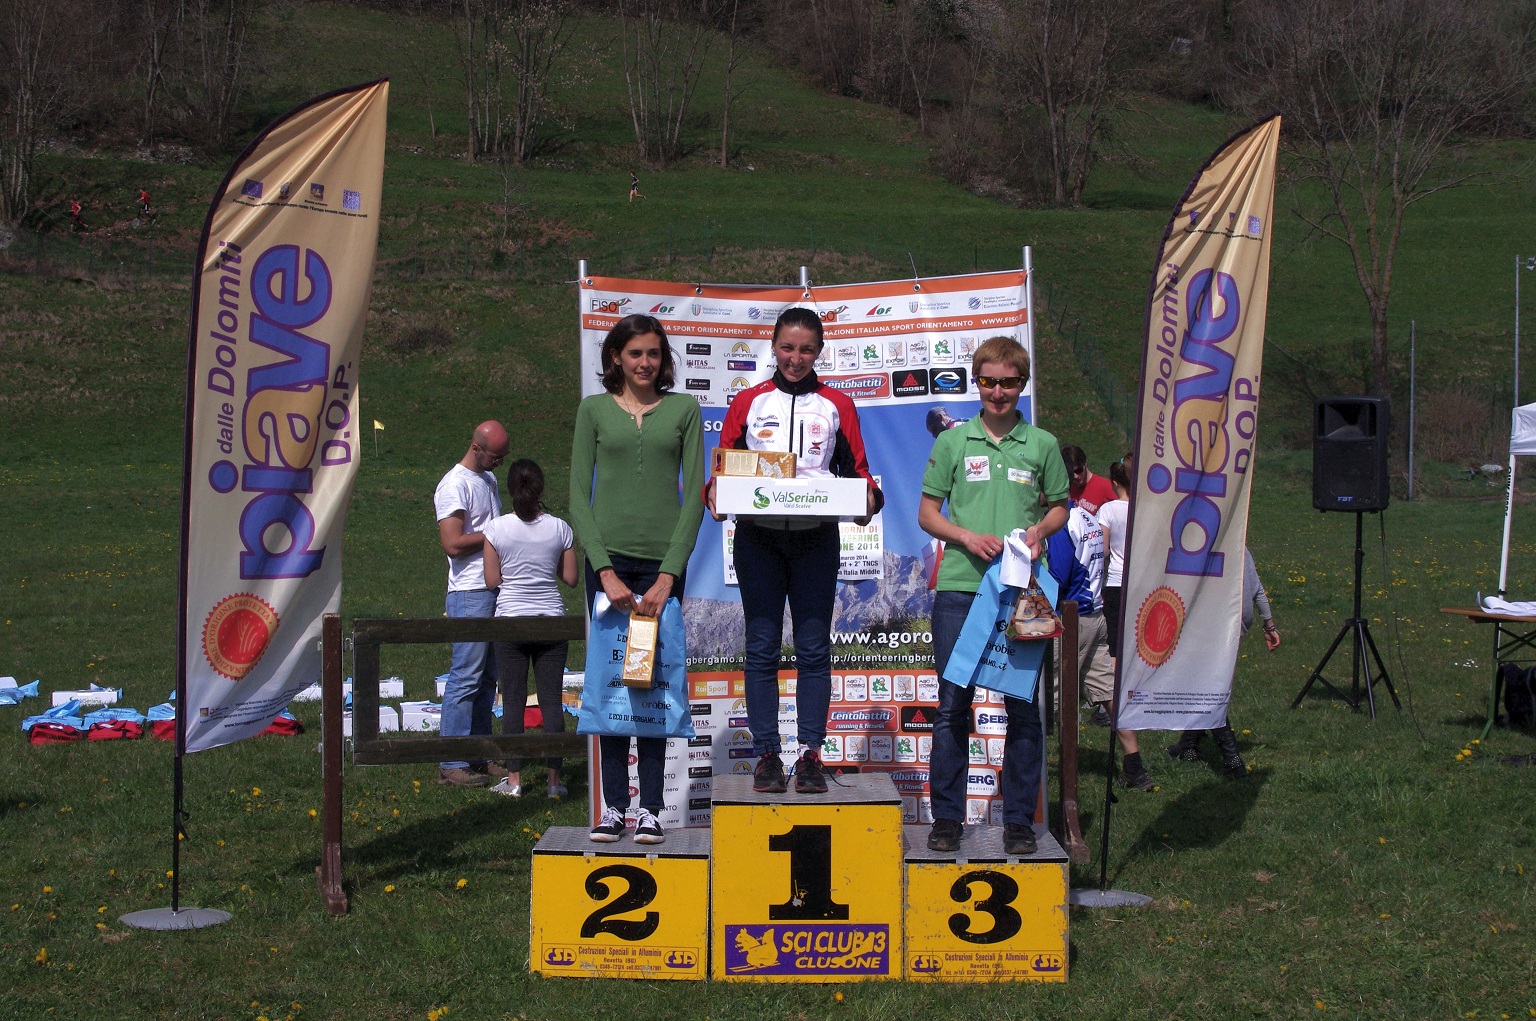 2014 03 30 - Clusone - Coppa Italia Orienteering  (7)